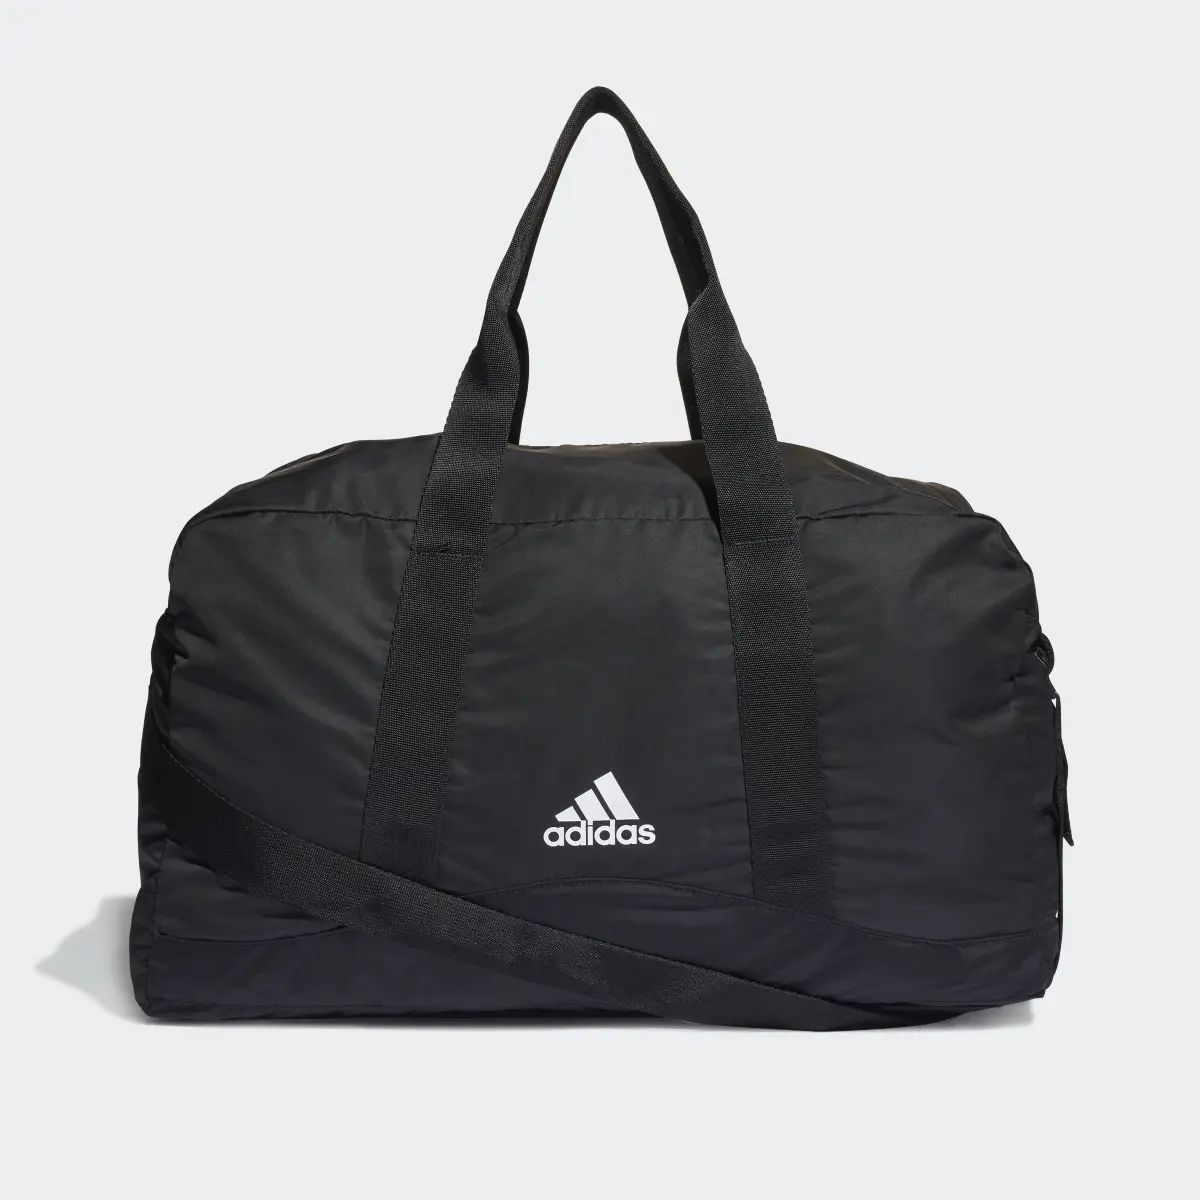 Adidas Sport Duffel Bag. 2